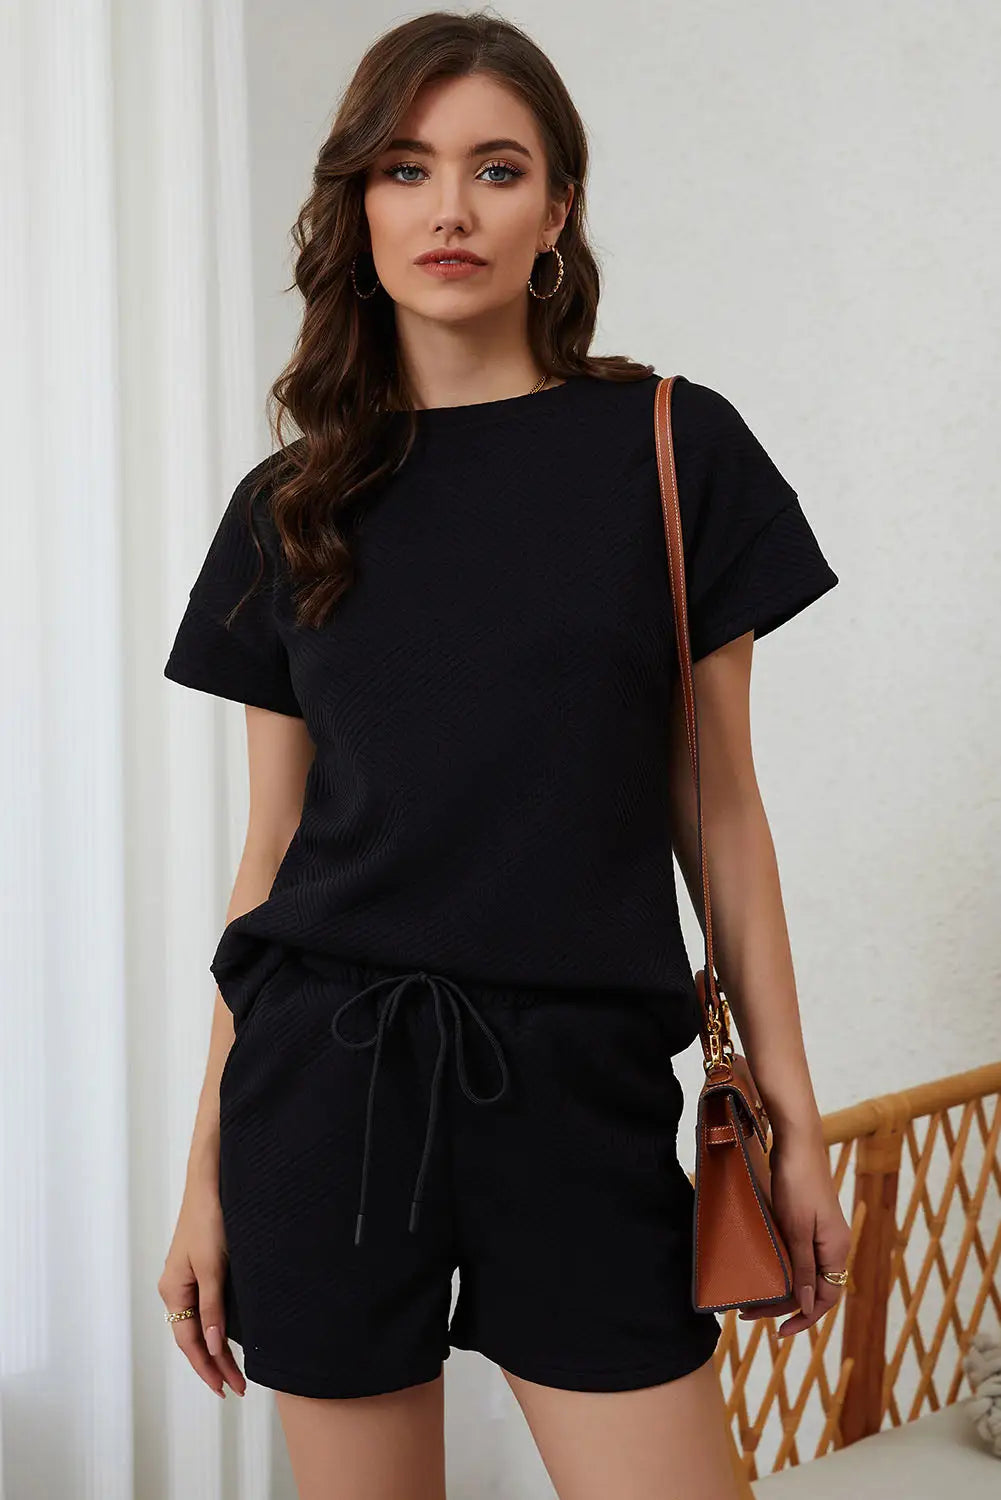 Black 2pcs solid textured drawstring shorts set - loungewear